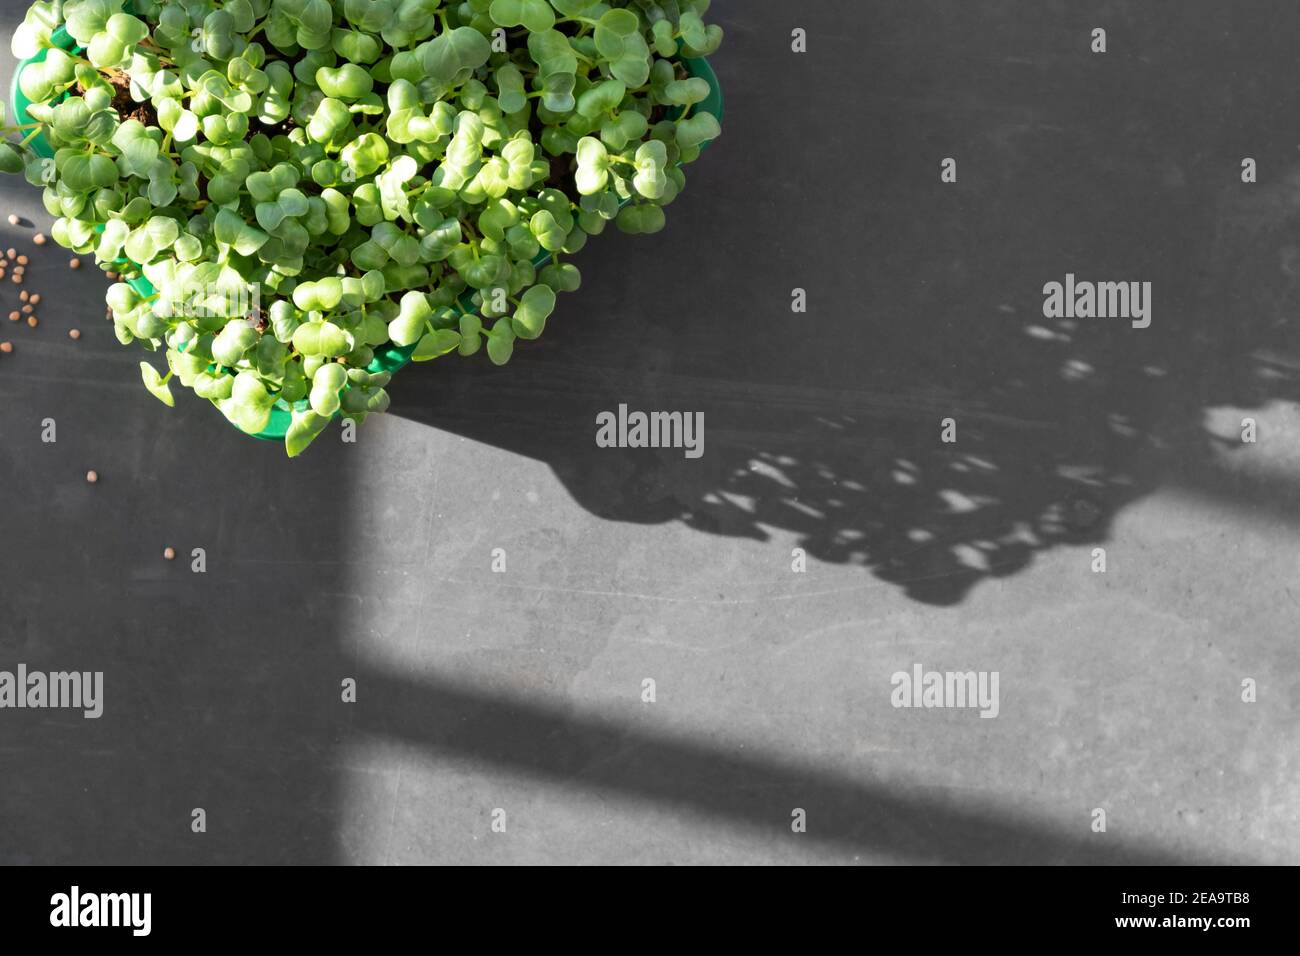 Microgreens poussant sur le seuil de la fenêtre. Micro-radis verts poussant dans la boîte Banque D'Images